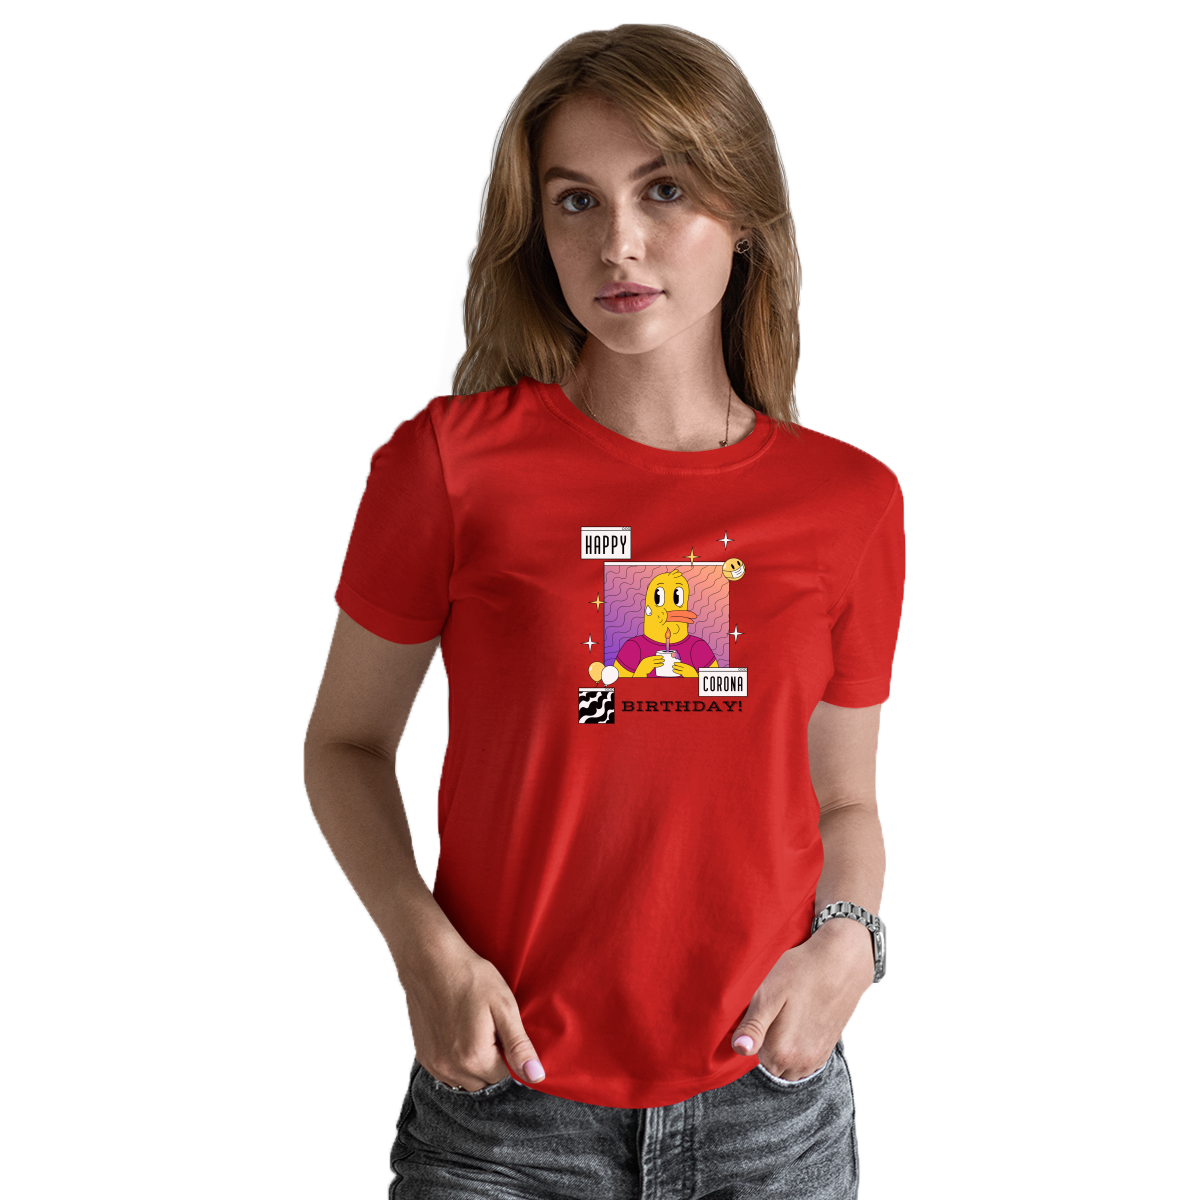 Happy Corona Birthday Women's T-shirt | Red